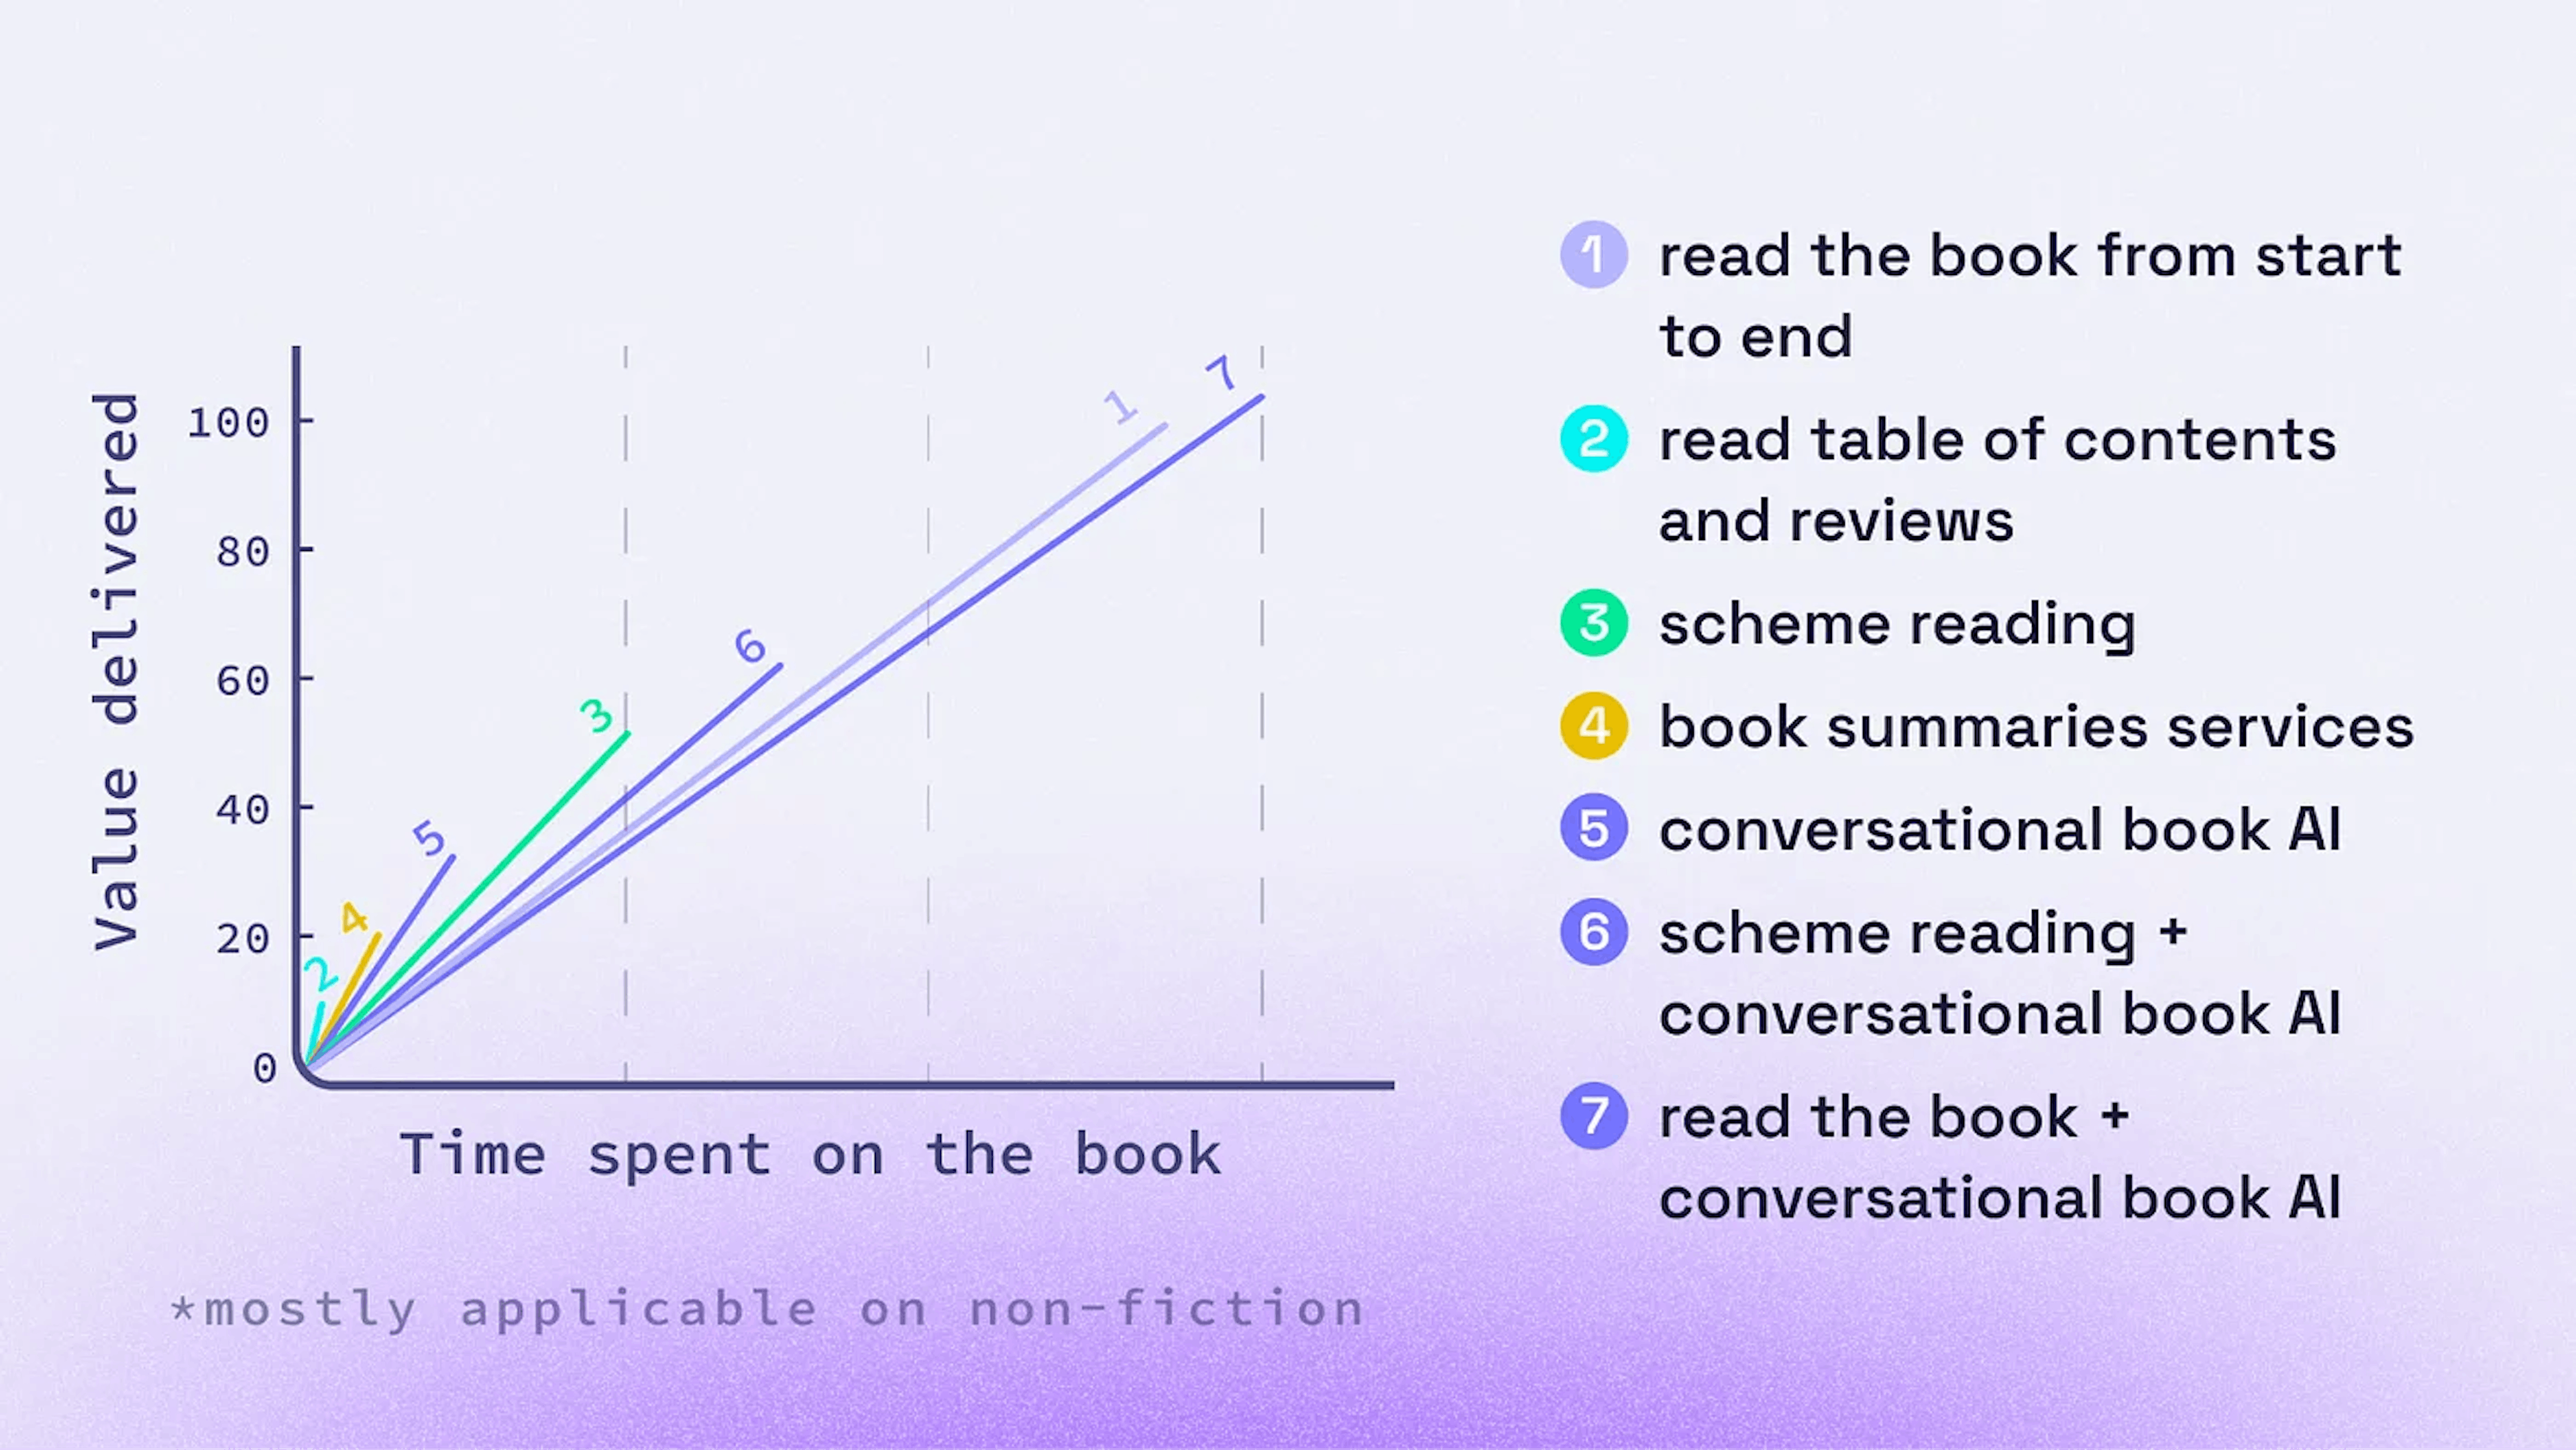 Options pour se familiariser avec un livre avant de l'acheter ou de décider de le lire